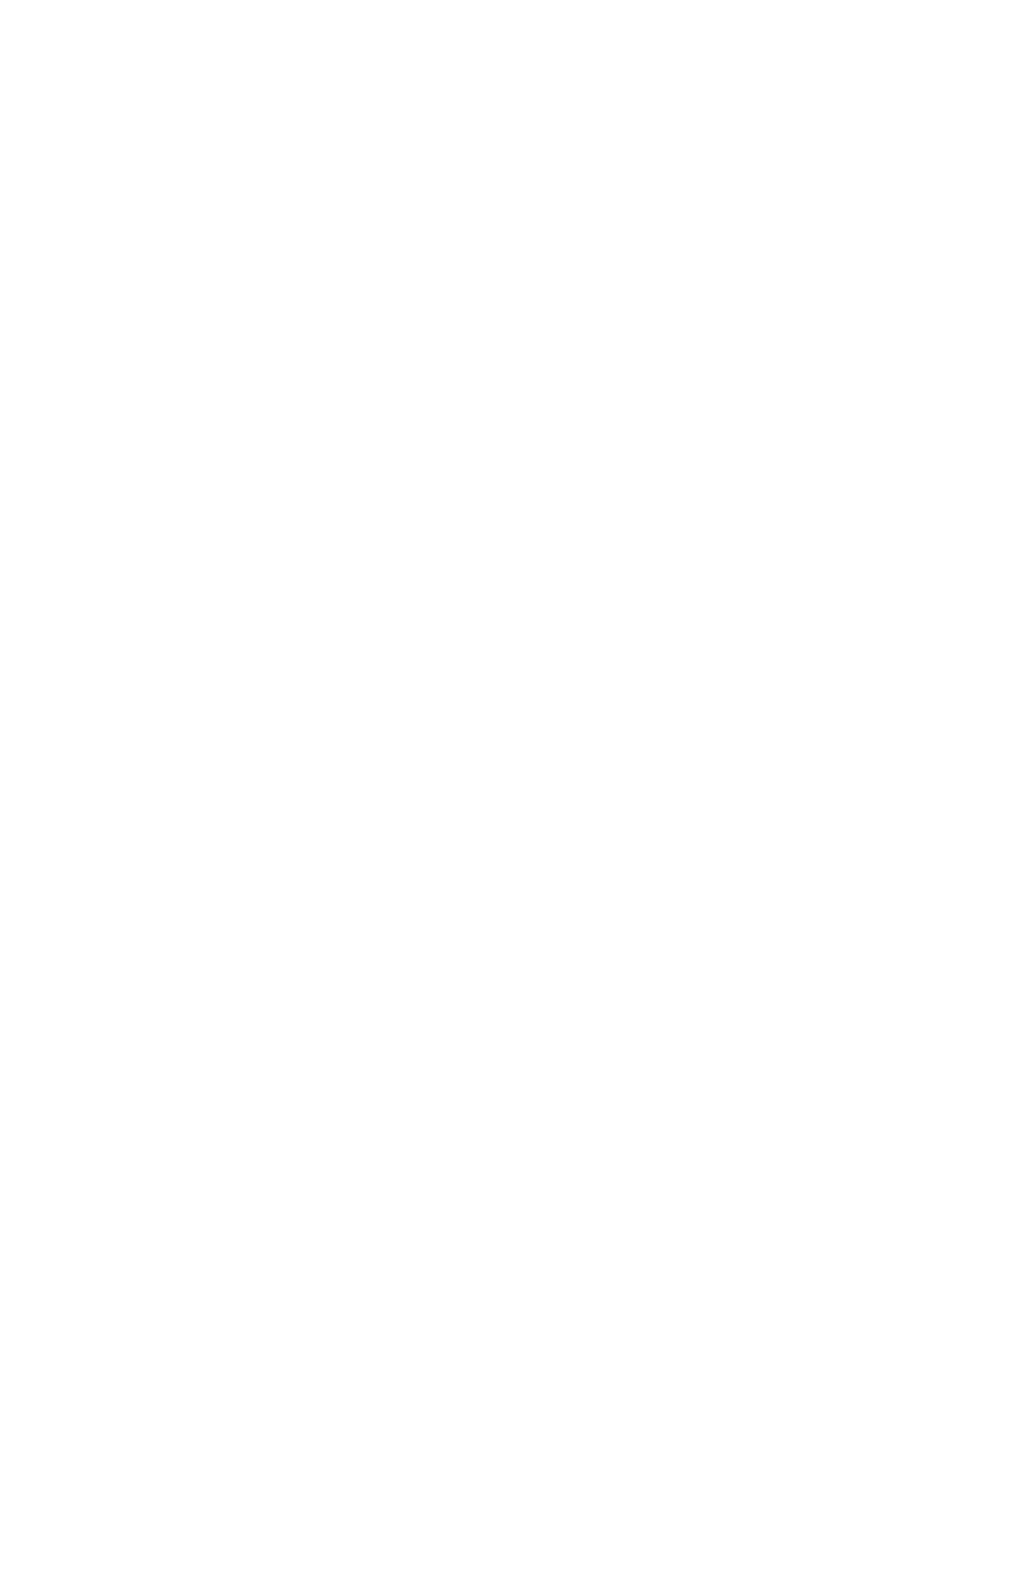 Dingdong Maicai logo pour fonds sombres (PNG transparent)